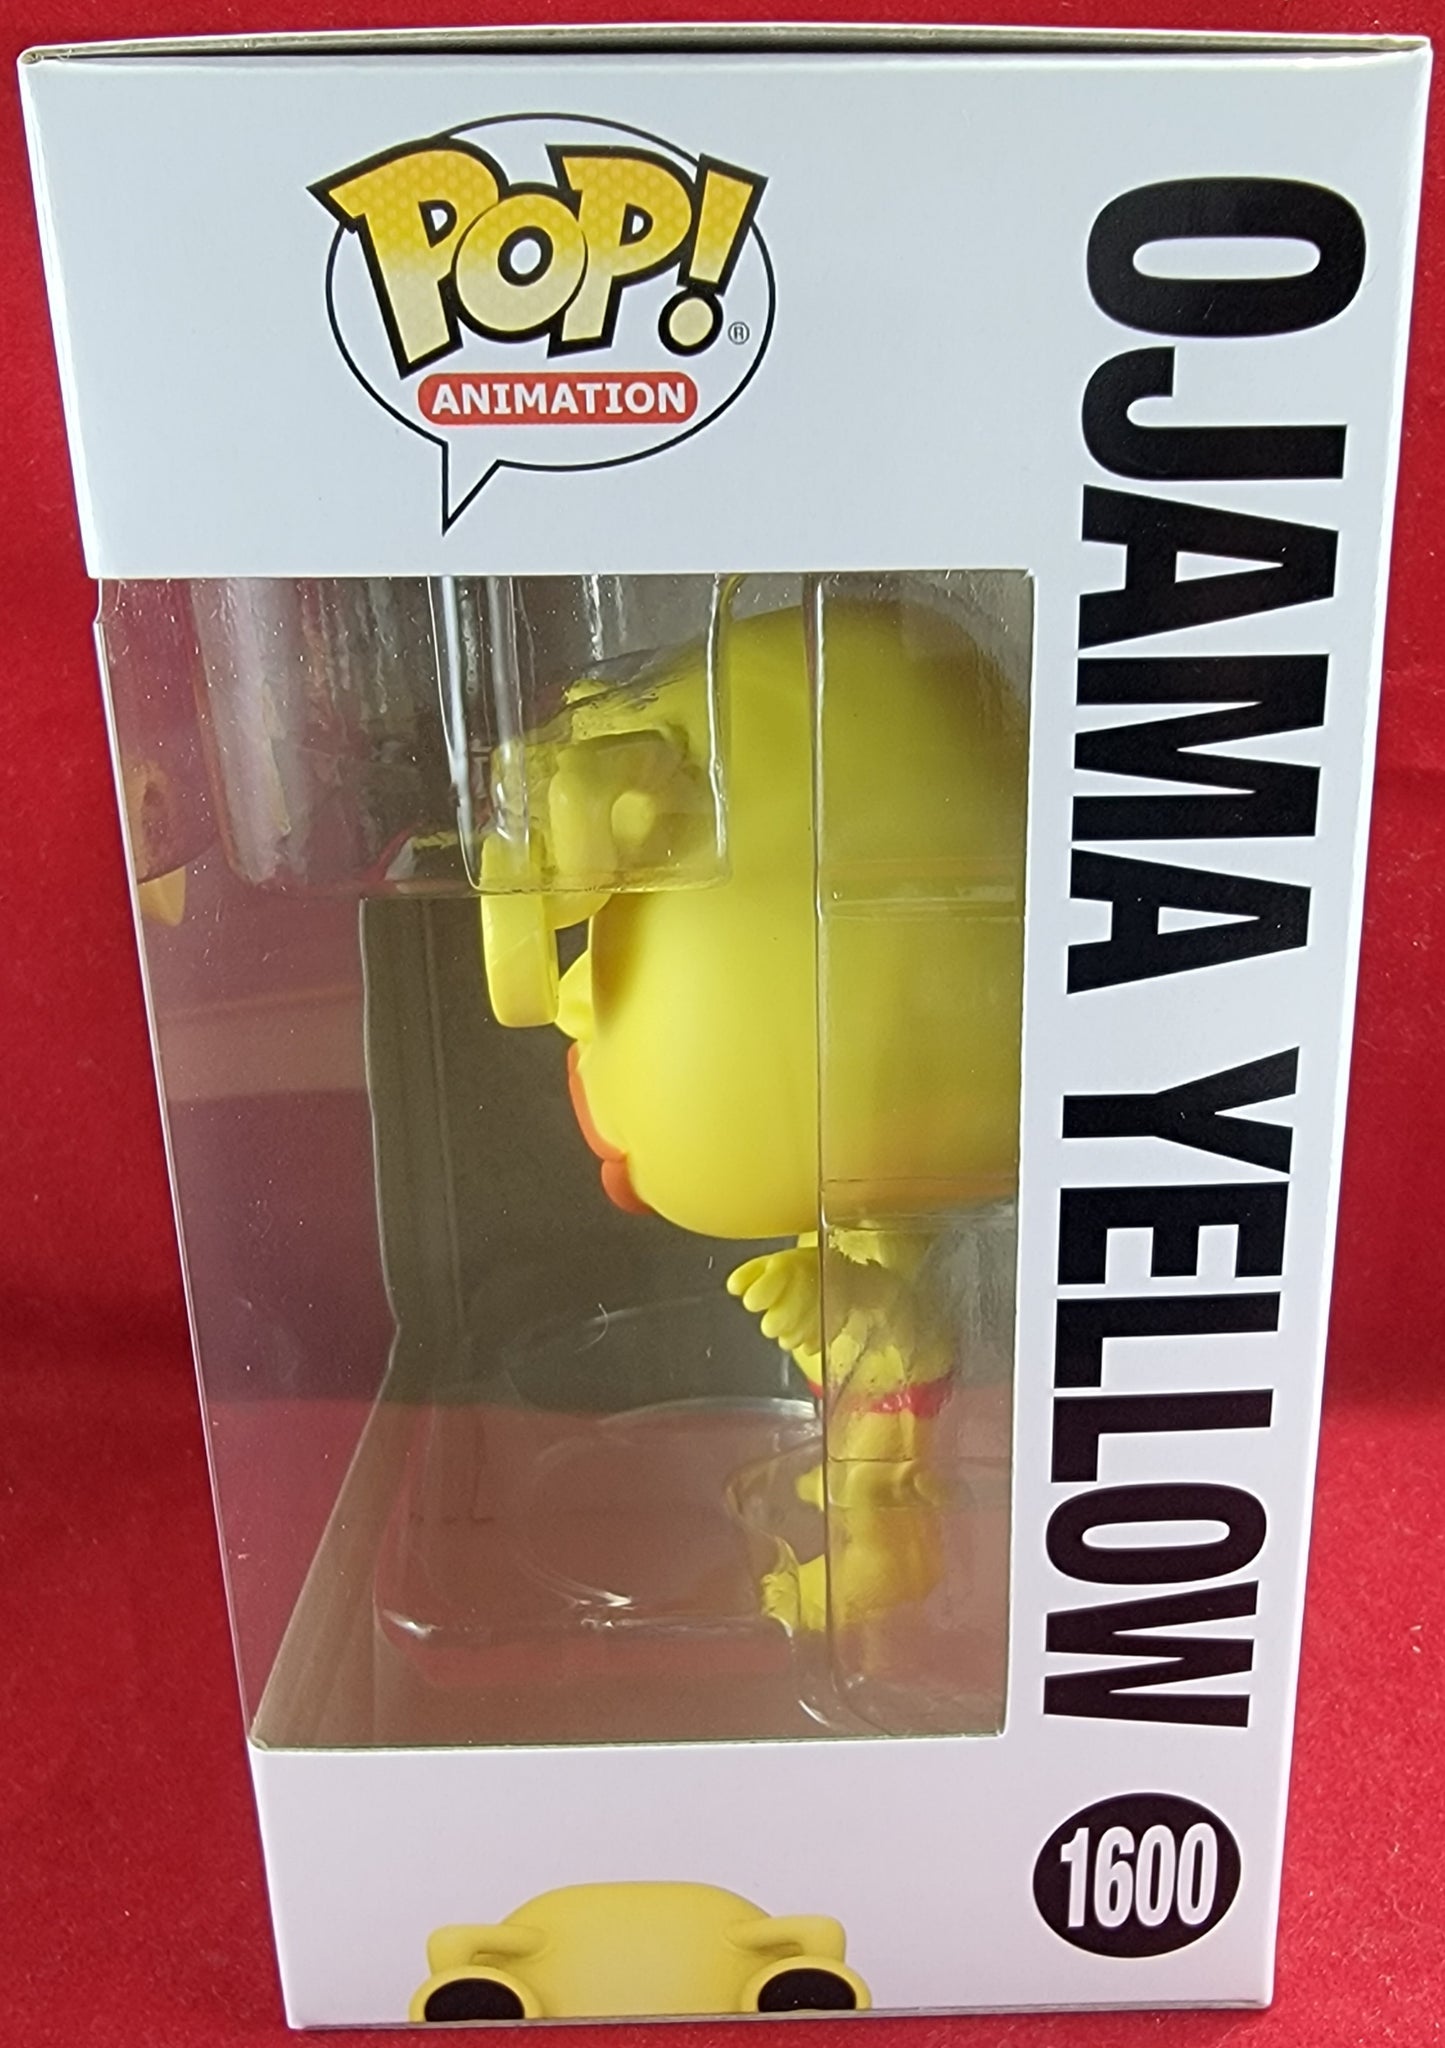 Ojama yellow funko # 1600 (nib)
With pop protector